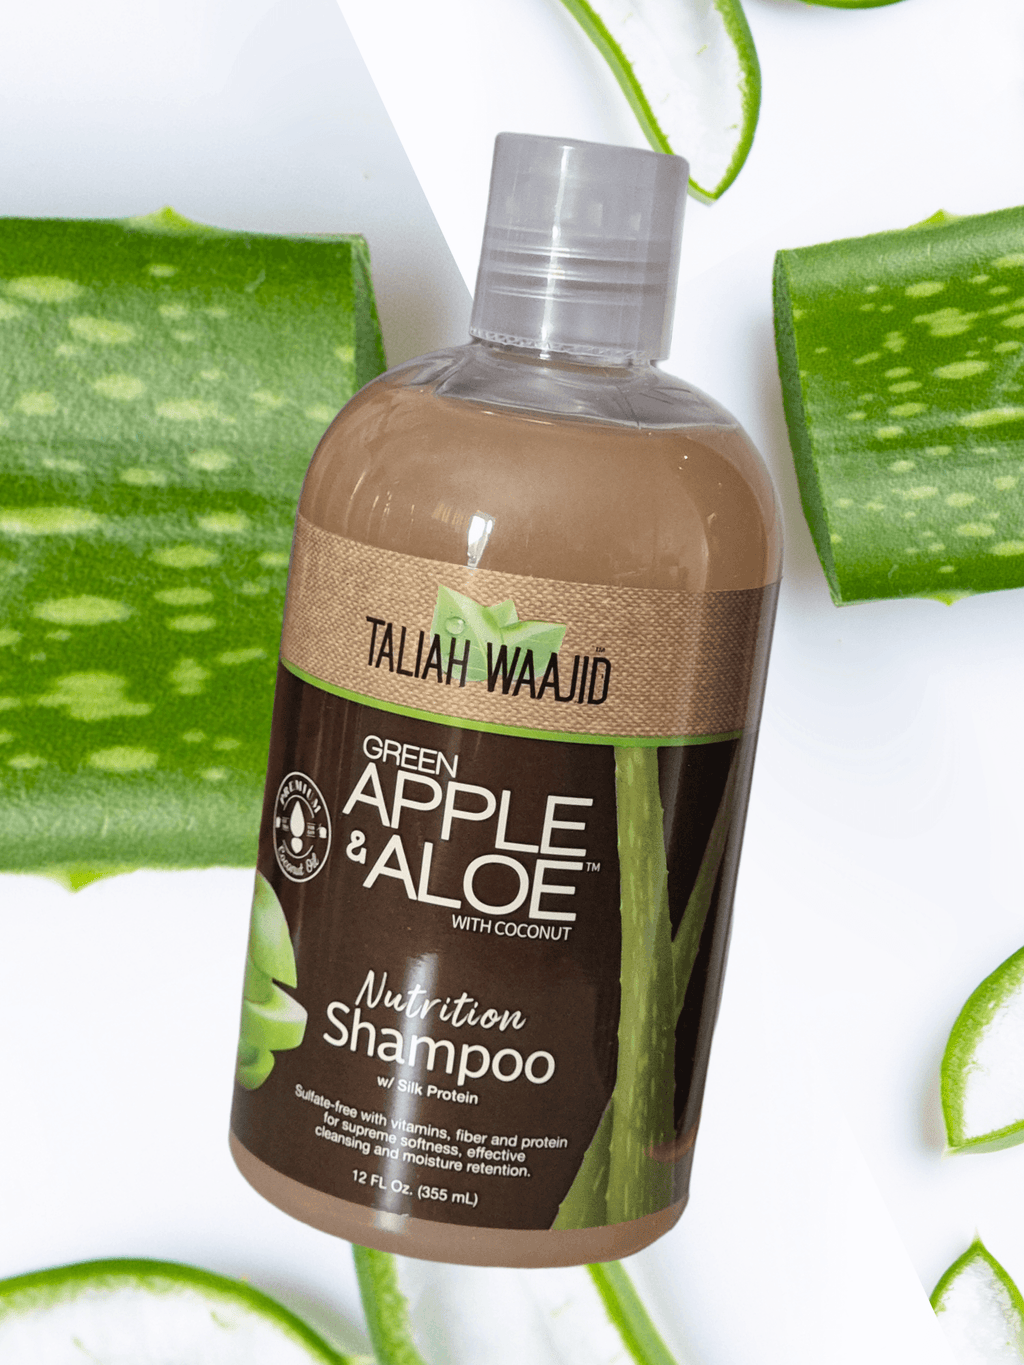 Taliah Waajid Green Apple & Aloe Shampoo - LocsNco